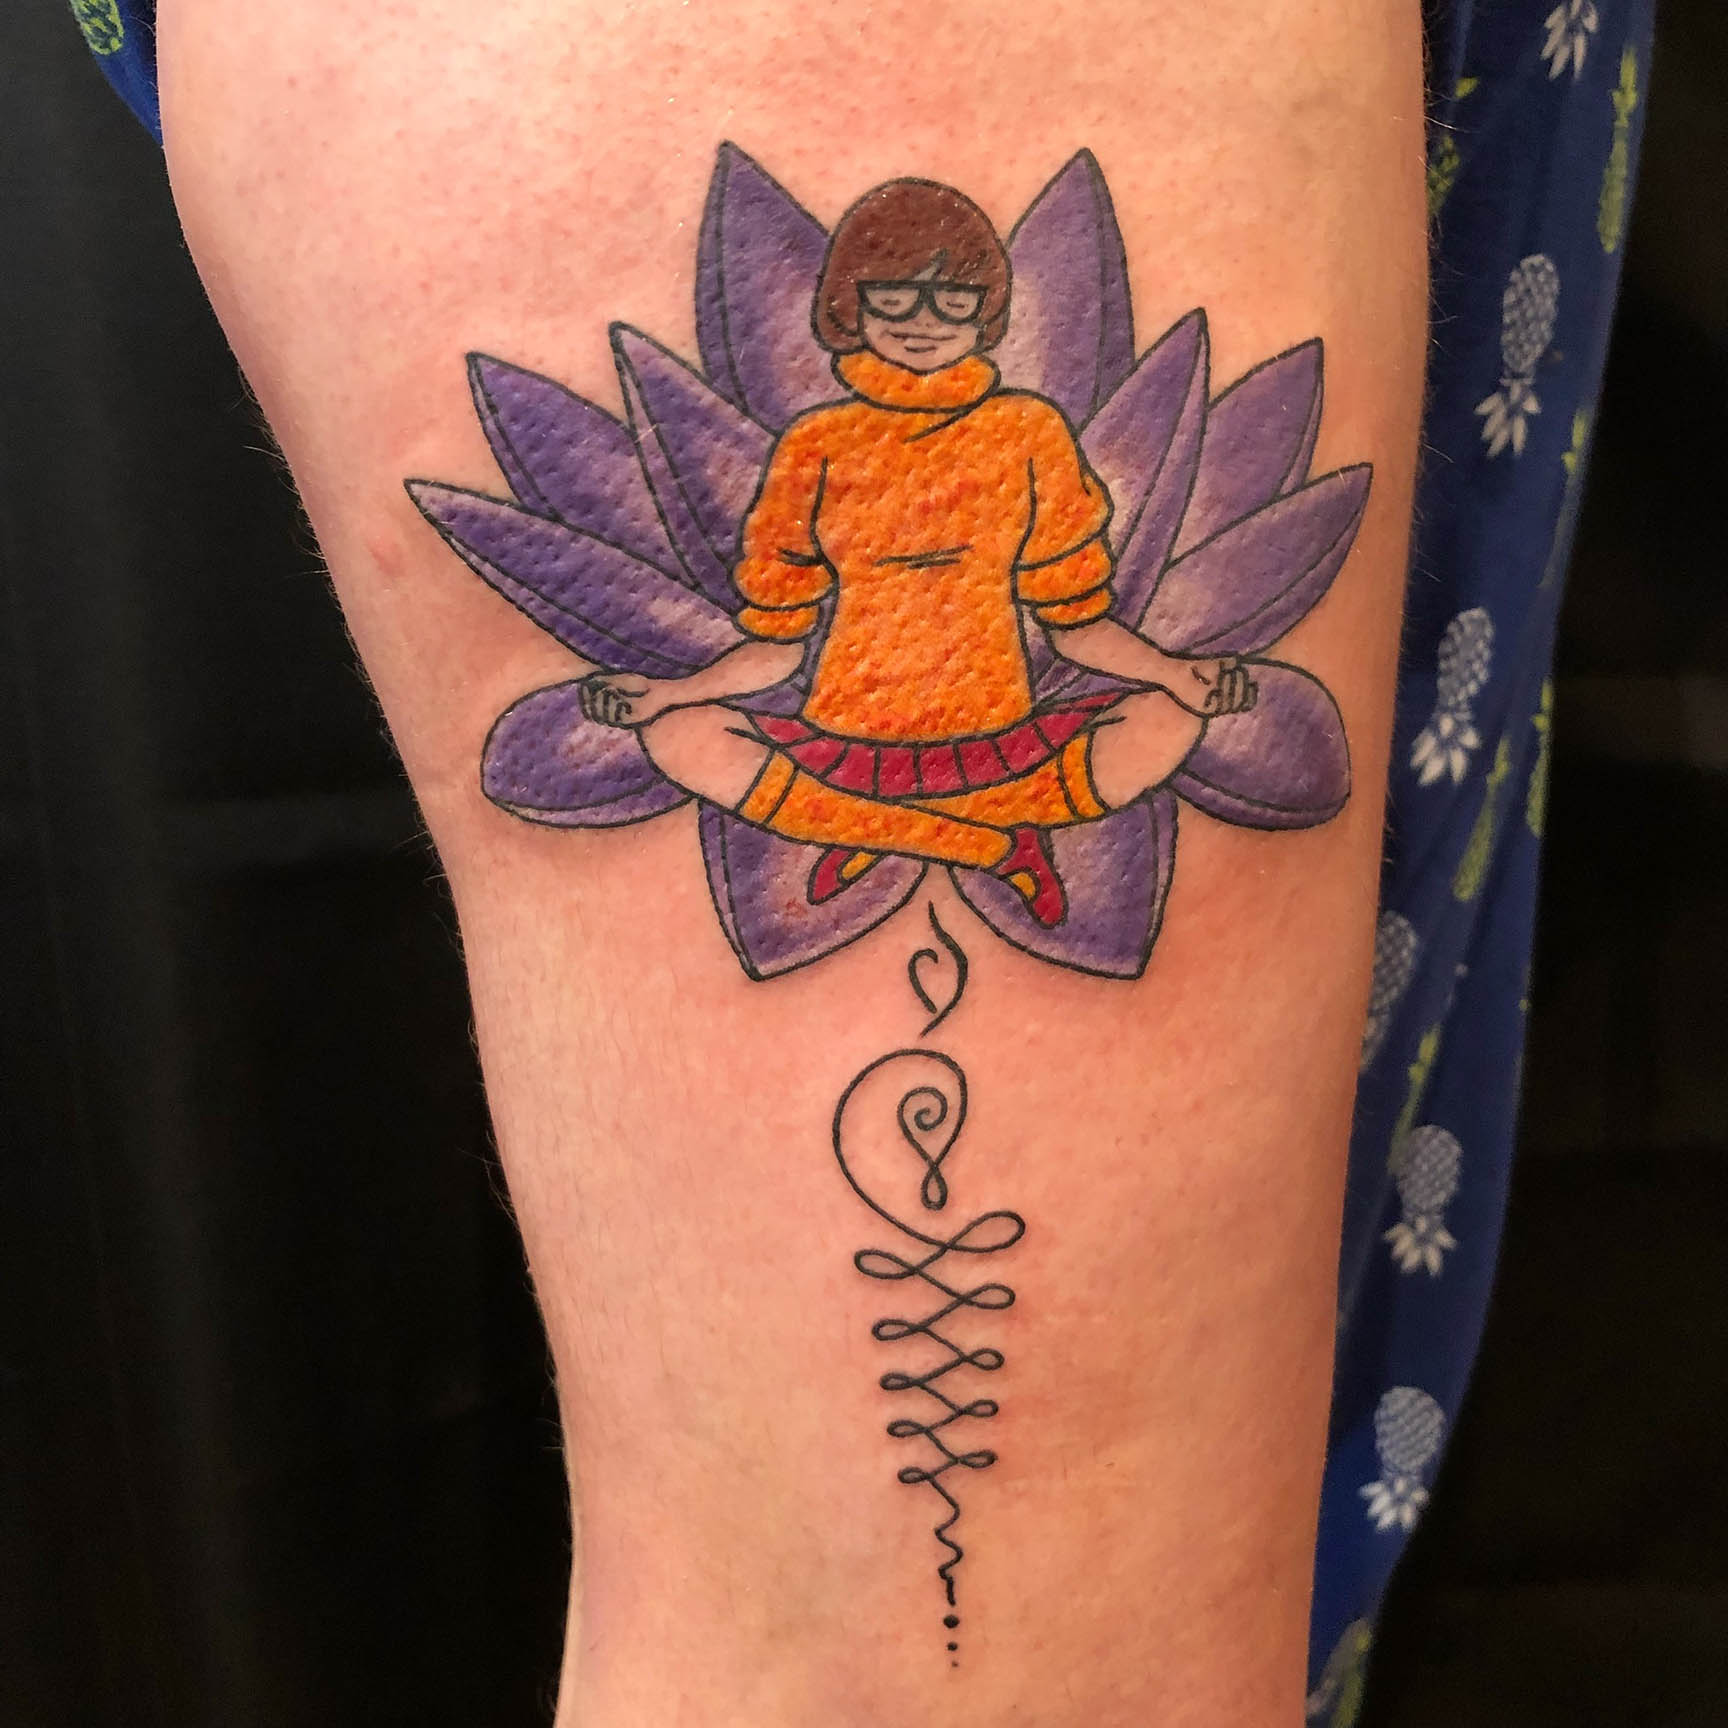 Velma and Lotus